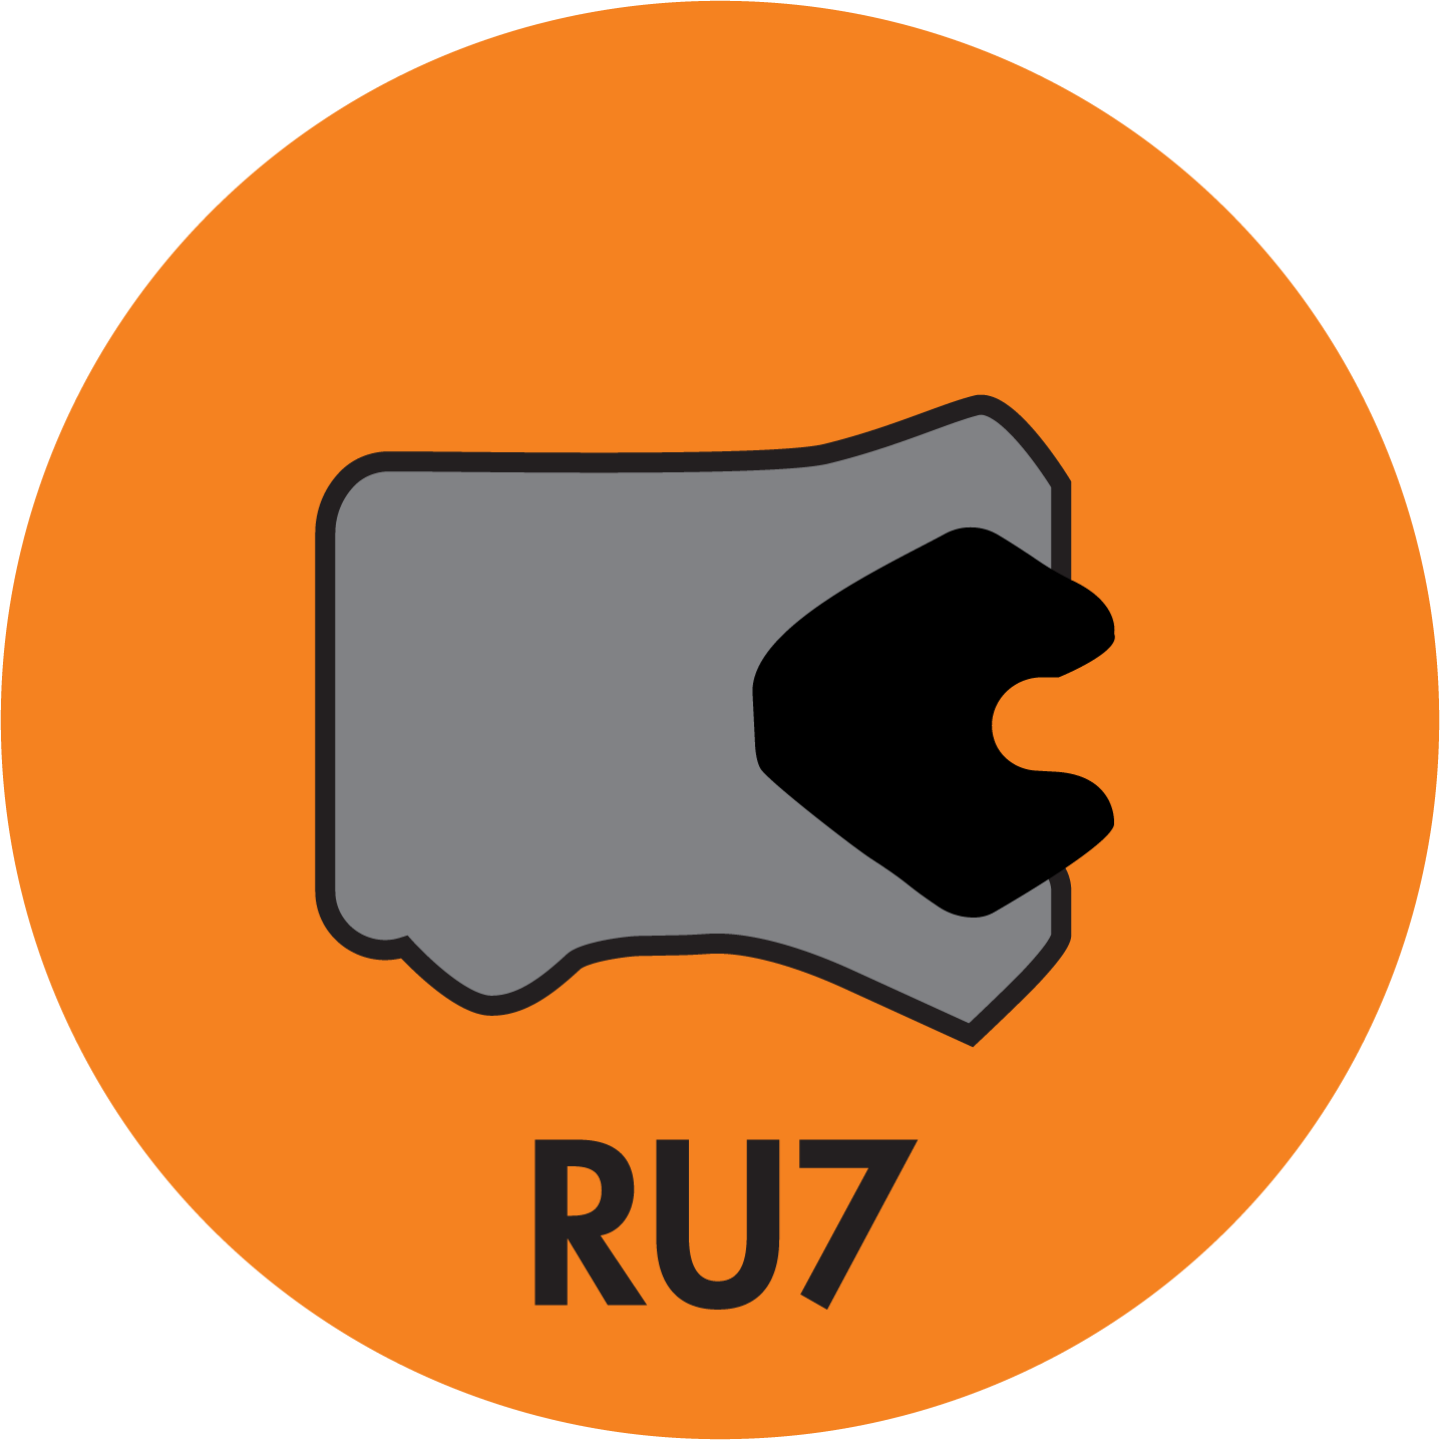 RU7 TWIN LIP ROD (LOADED) U-CUP (AU+NBR) - RU7-37505000-625-P92E Image 1